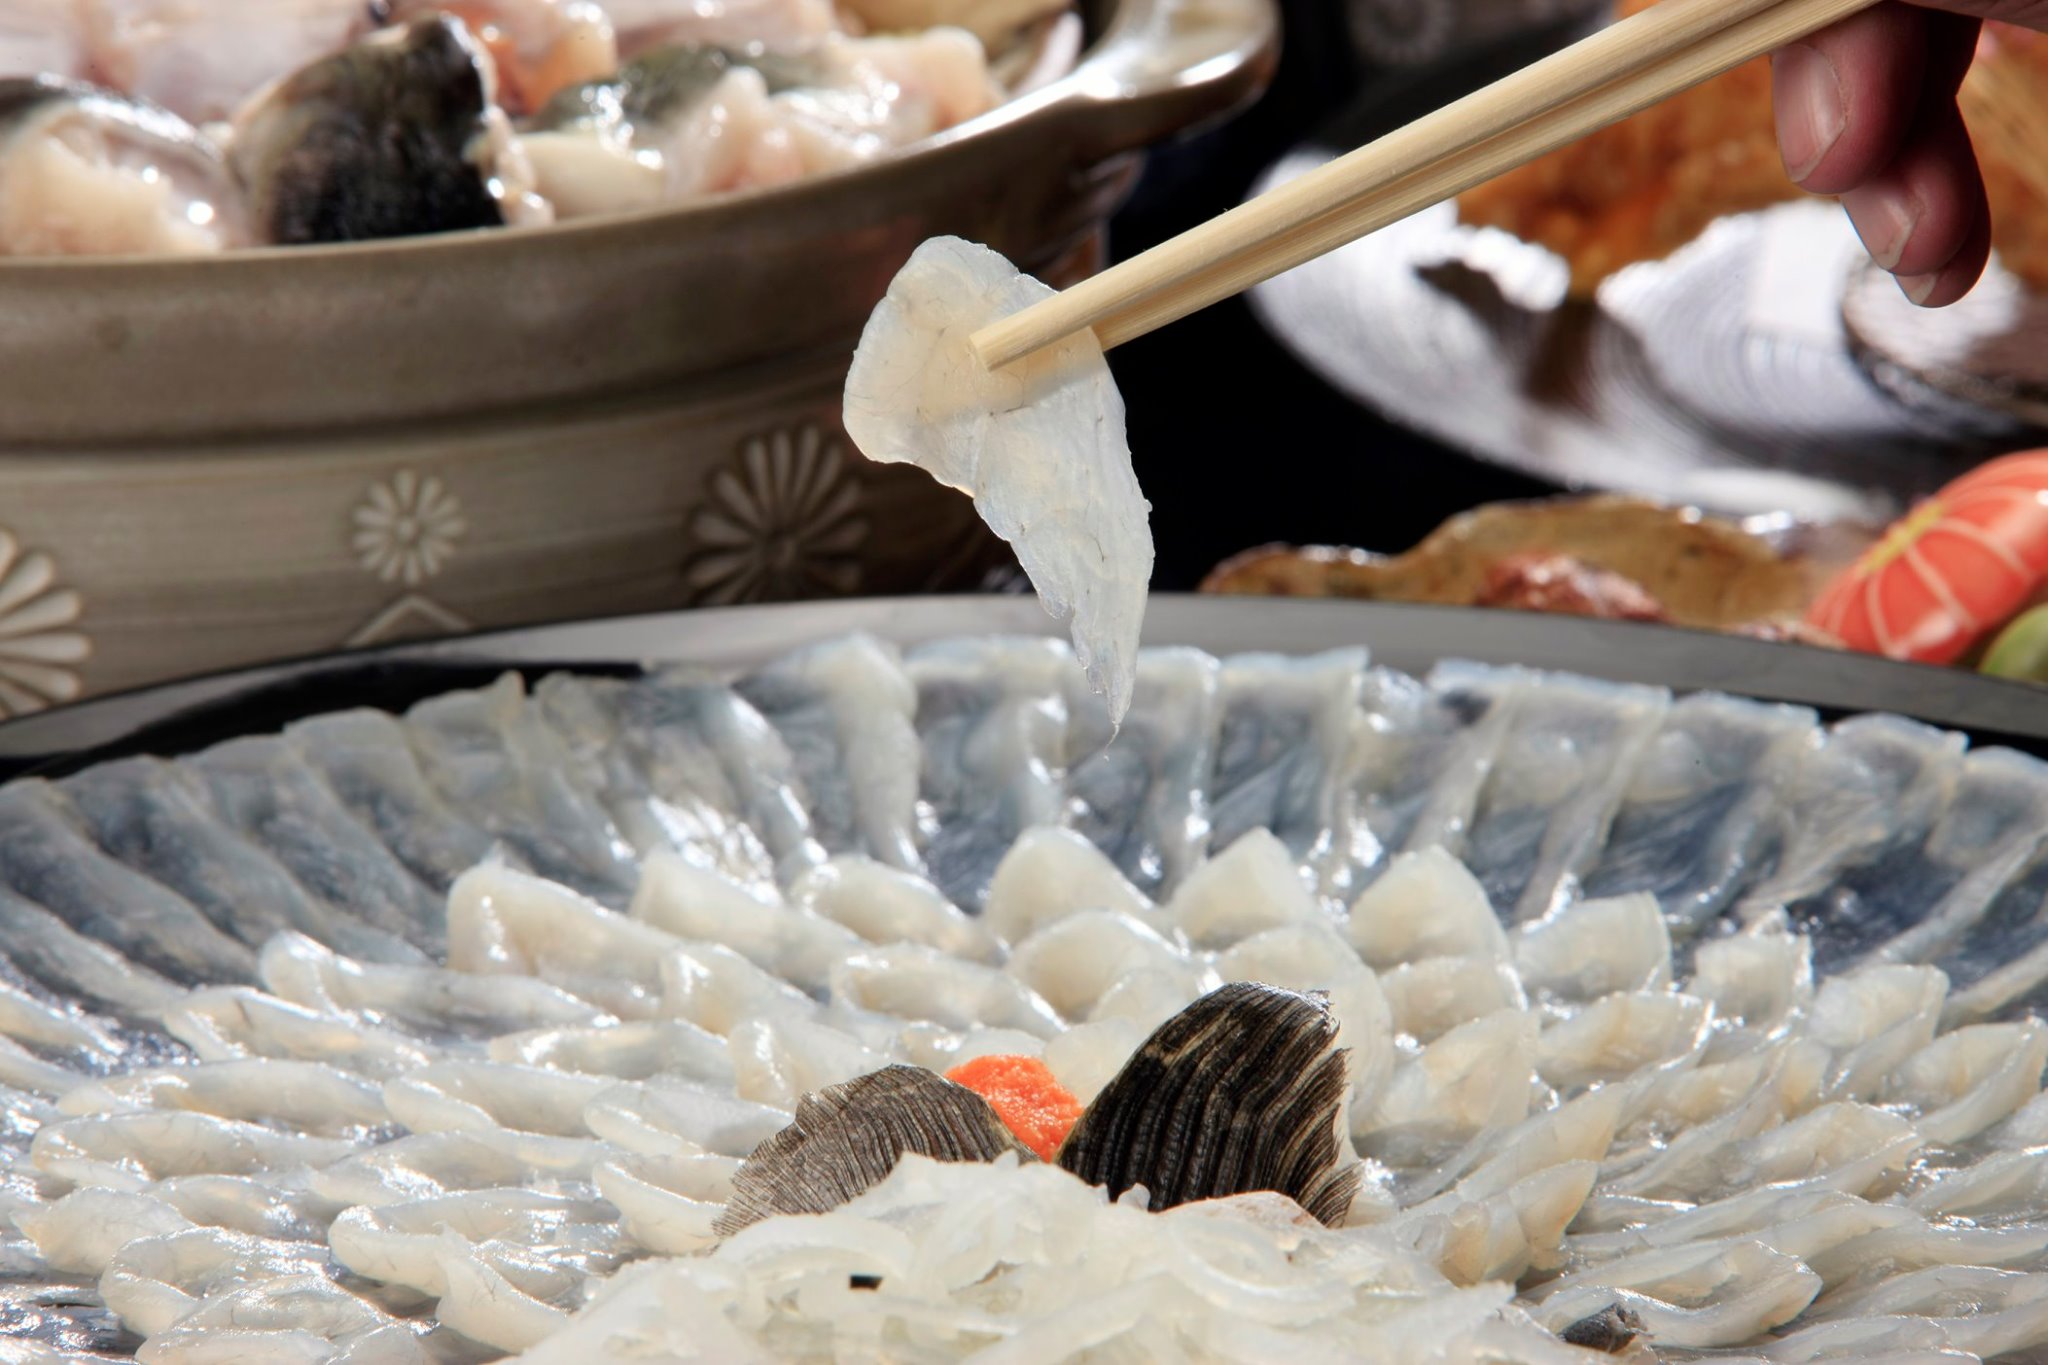 High class fugu blowfish cuisine is famous in Kyushu